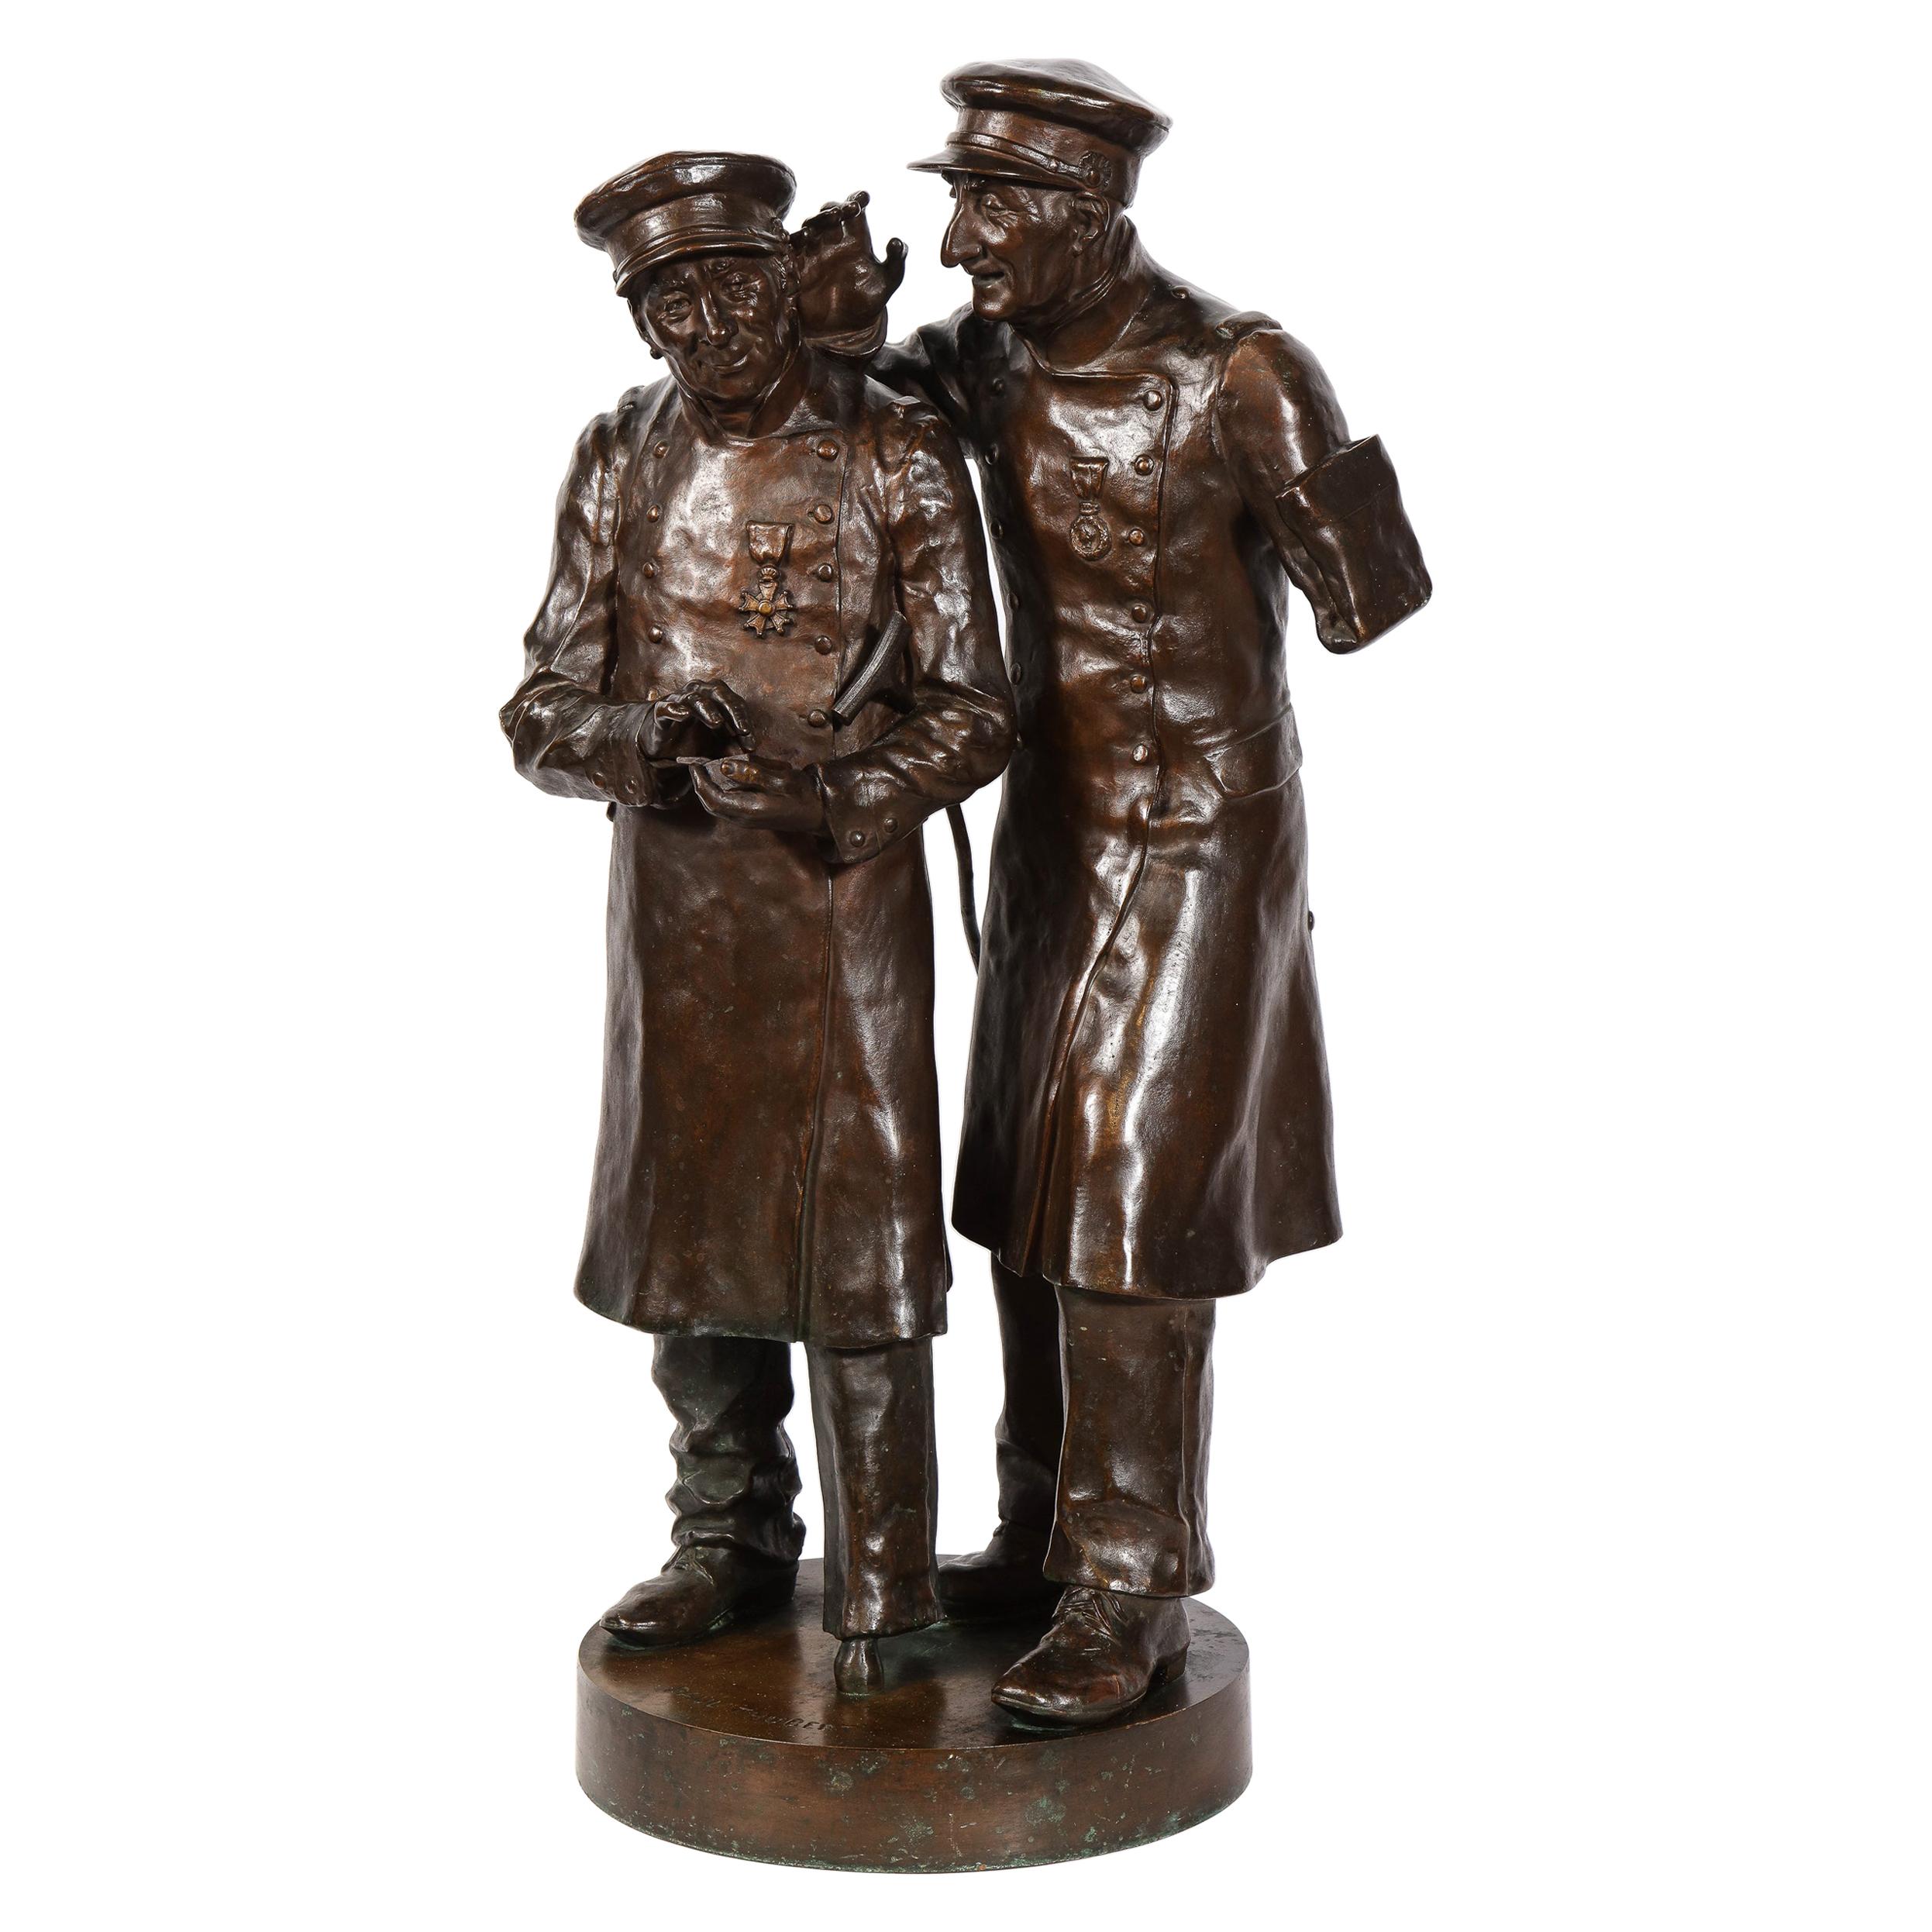 Grande sculpture en bronze de Paul Thubert « Anglais, XIXe siècle » représentant des vétérans de la guerre